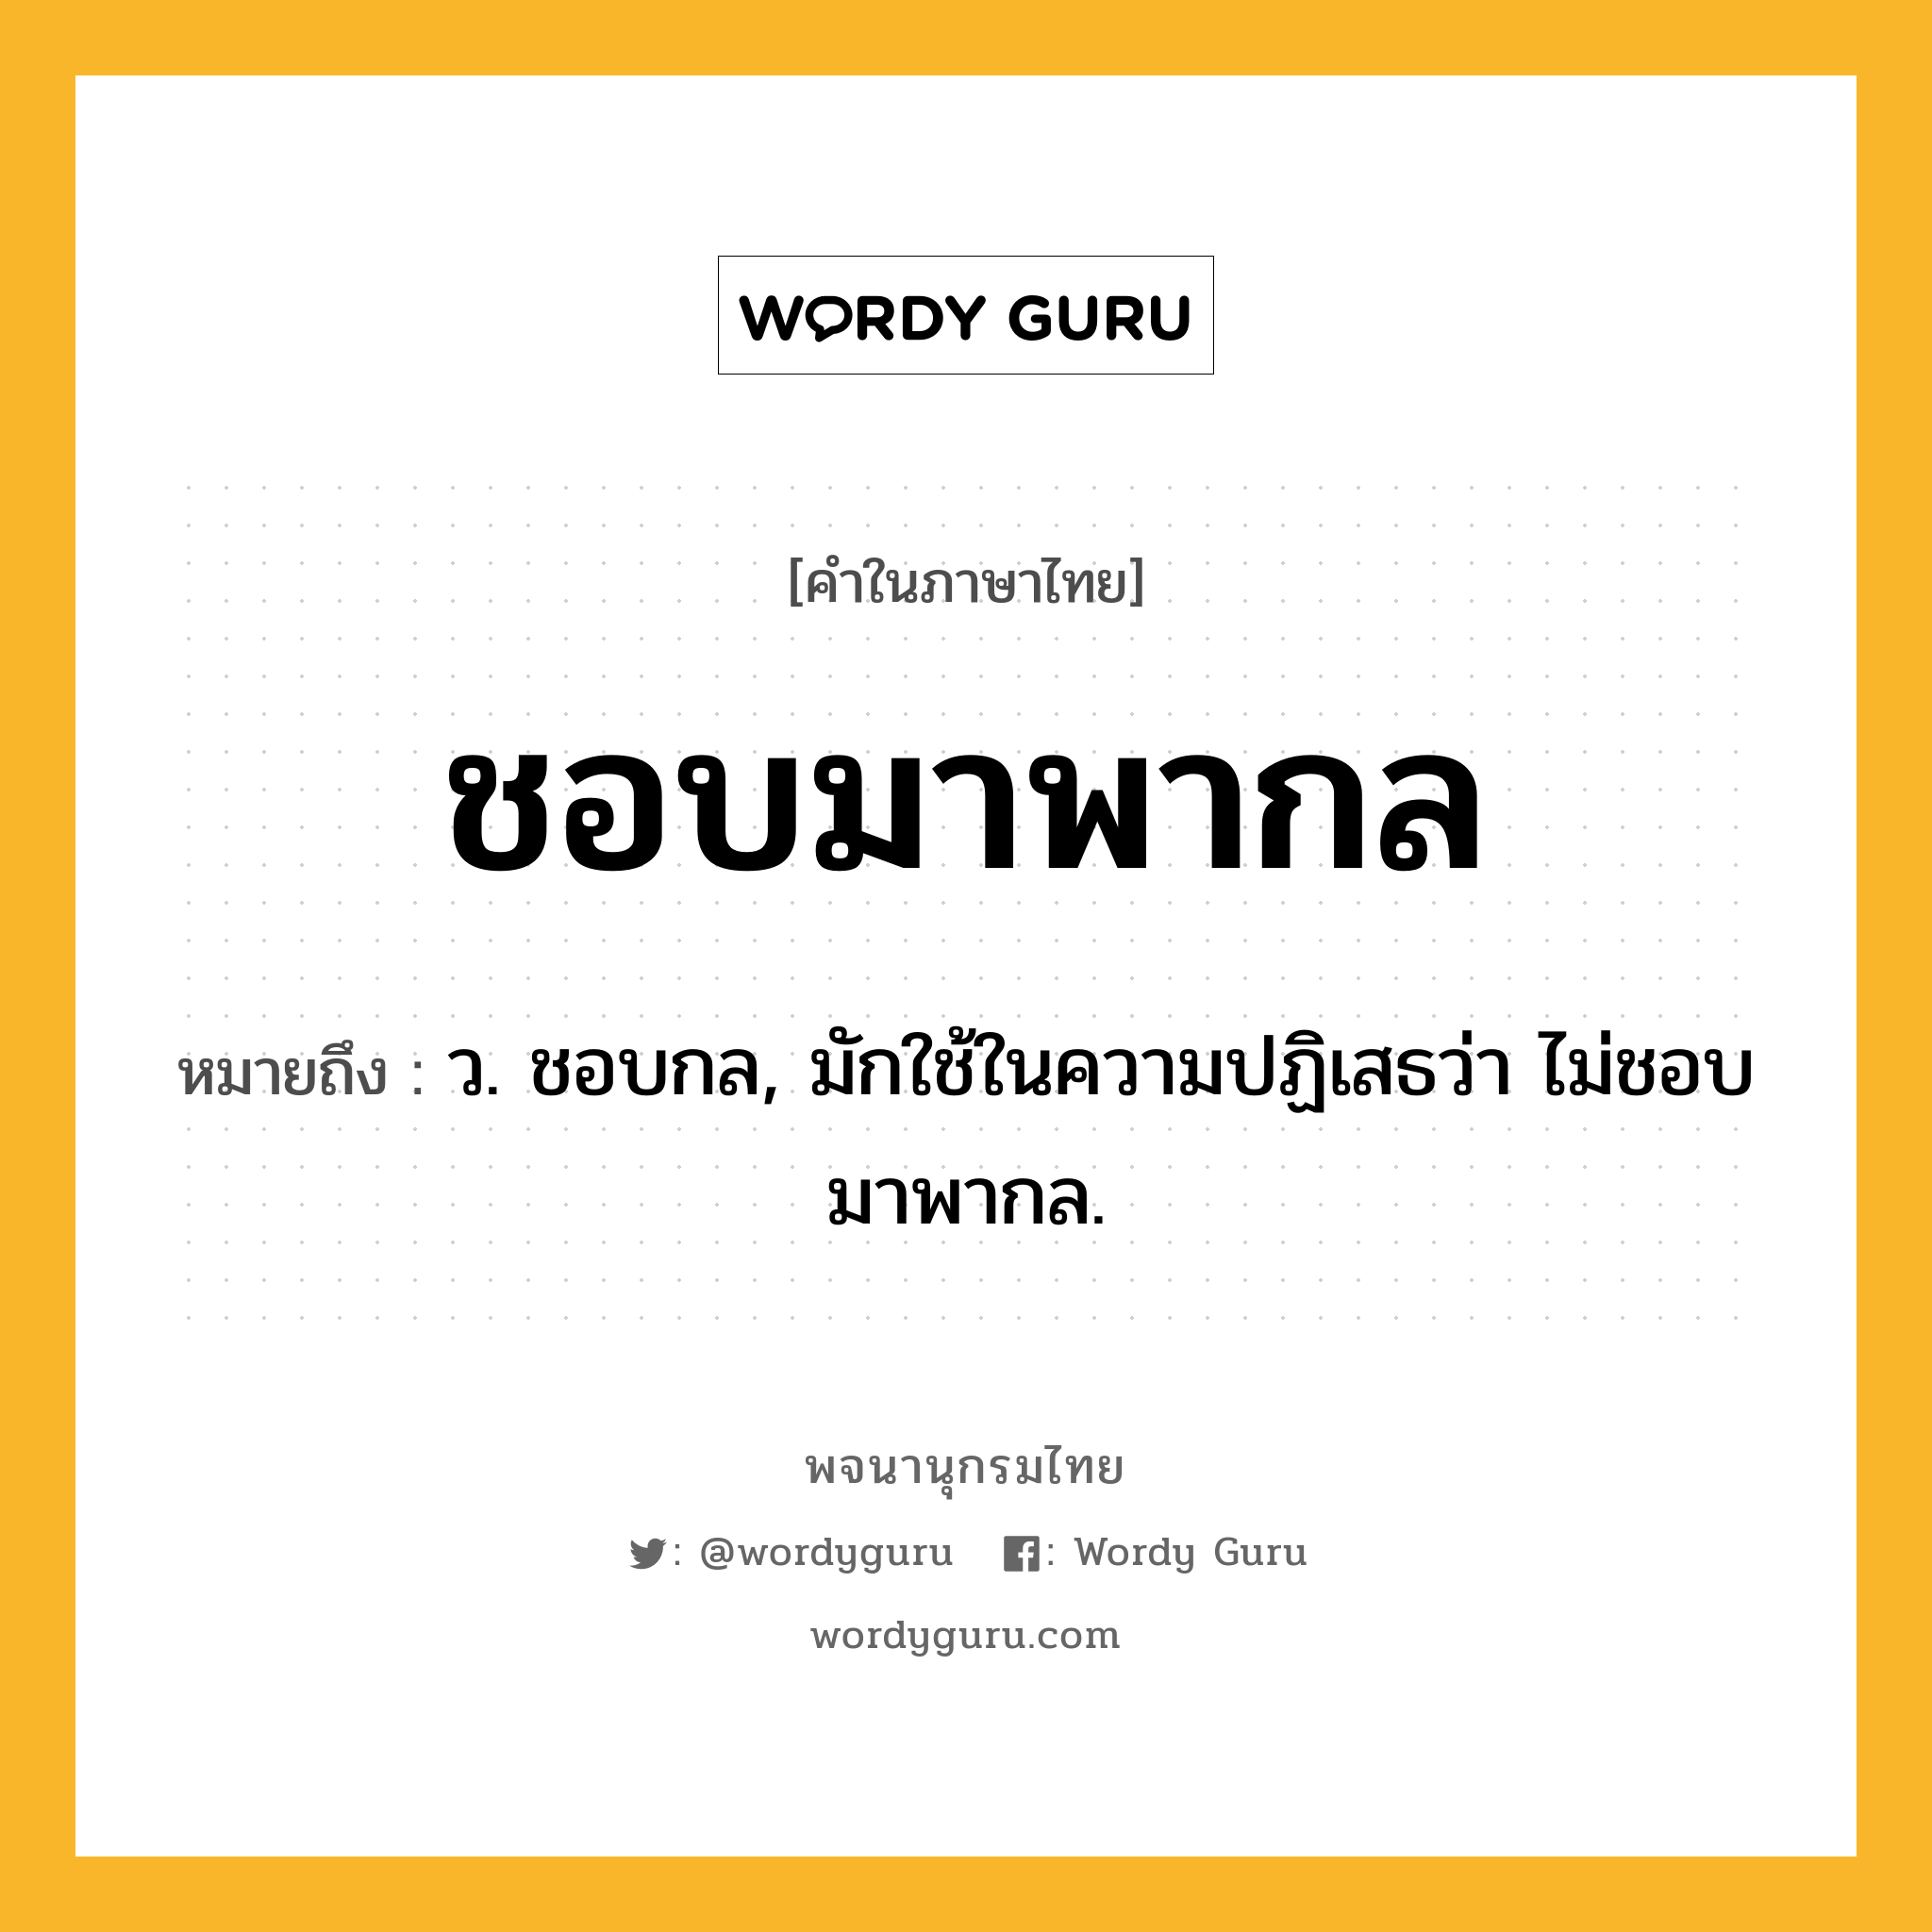 ชอบมาพากล ความหมาย หมายถึงอะไร?, คำในภาษาไทย ชอบมาพากล หมายถึง ว. ชอบกล, มักใช้ในความปฏิเสธว่า ไม่ชอบมาพากล.